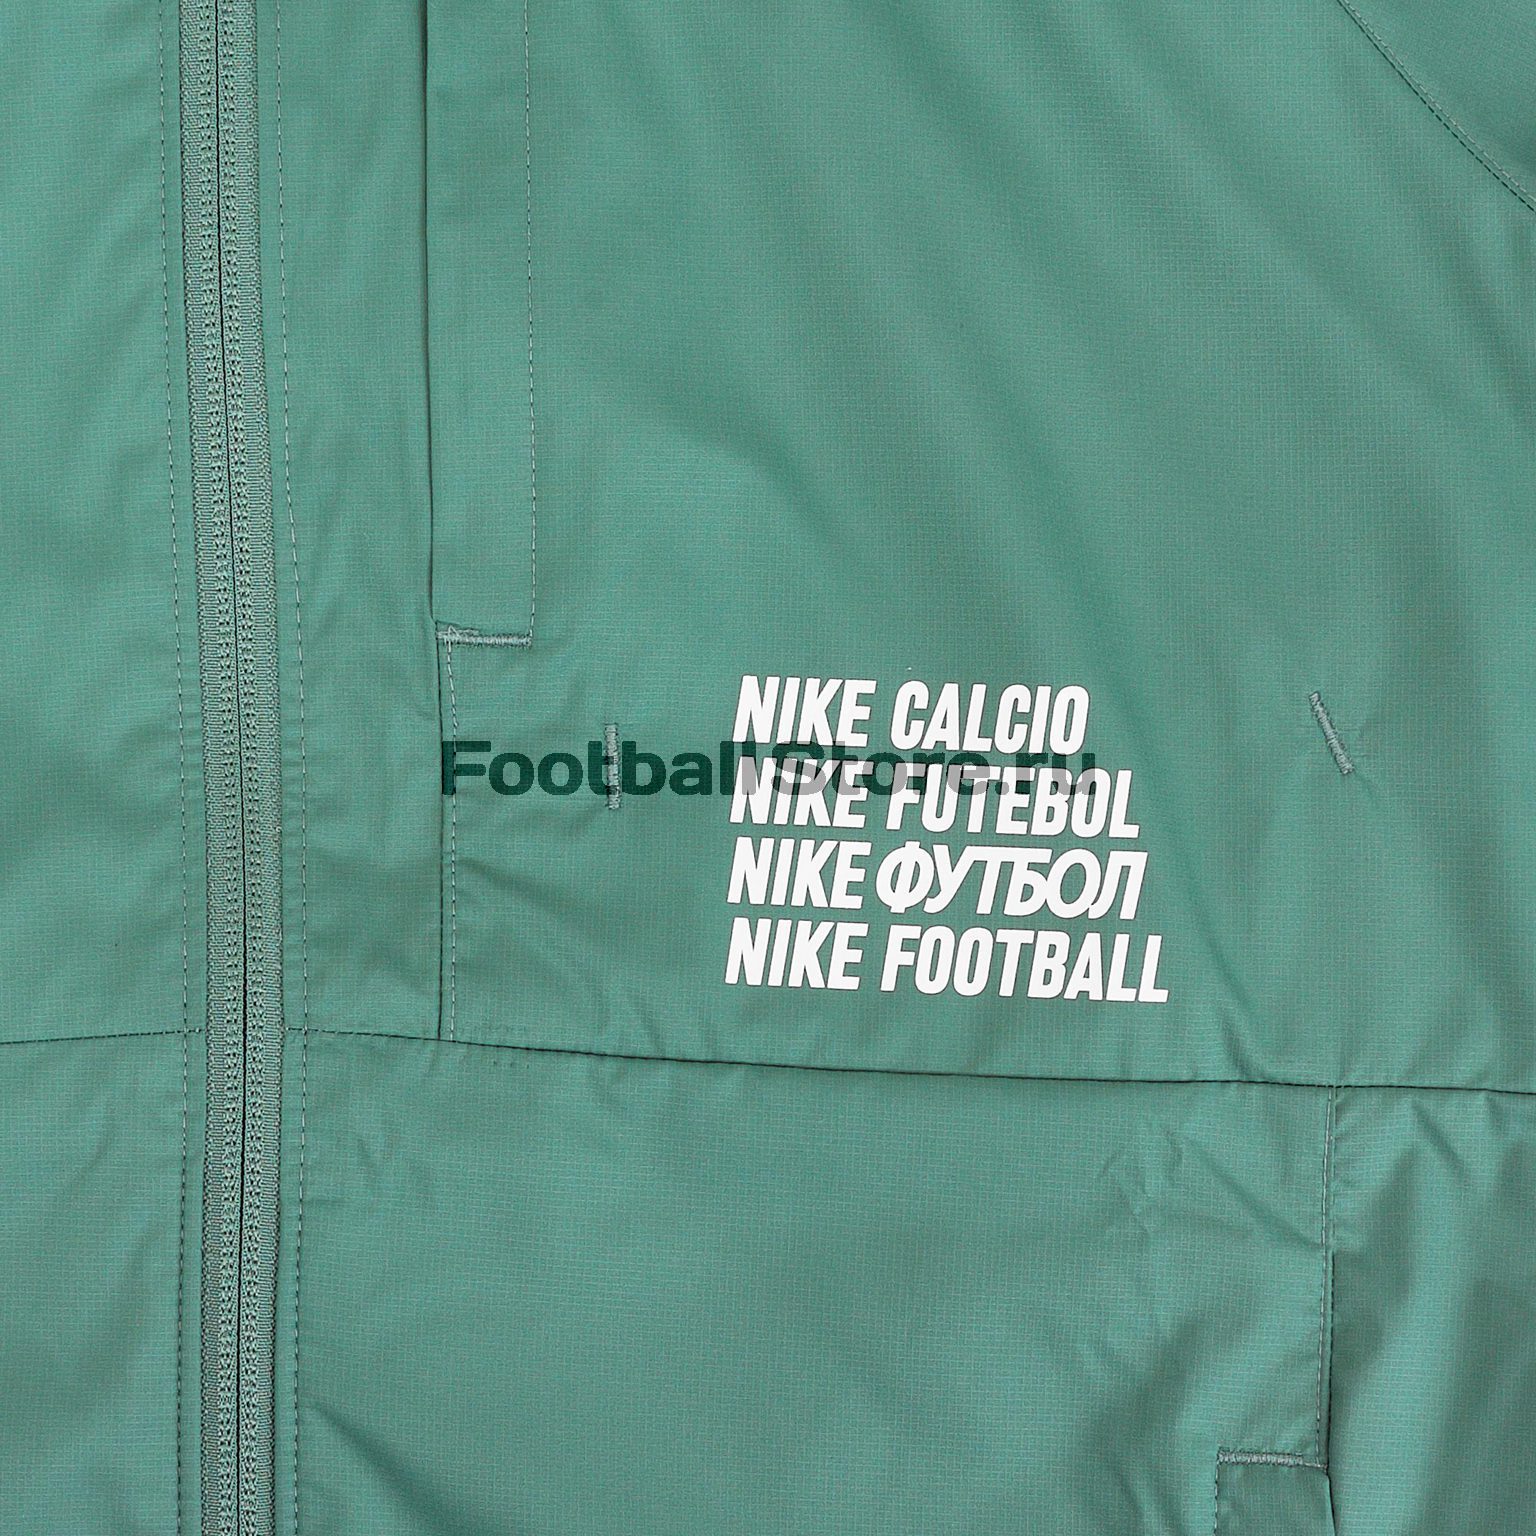 Куртка Nike F.C. CD6770-362